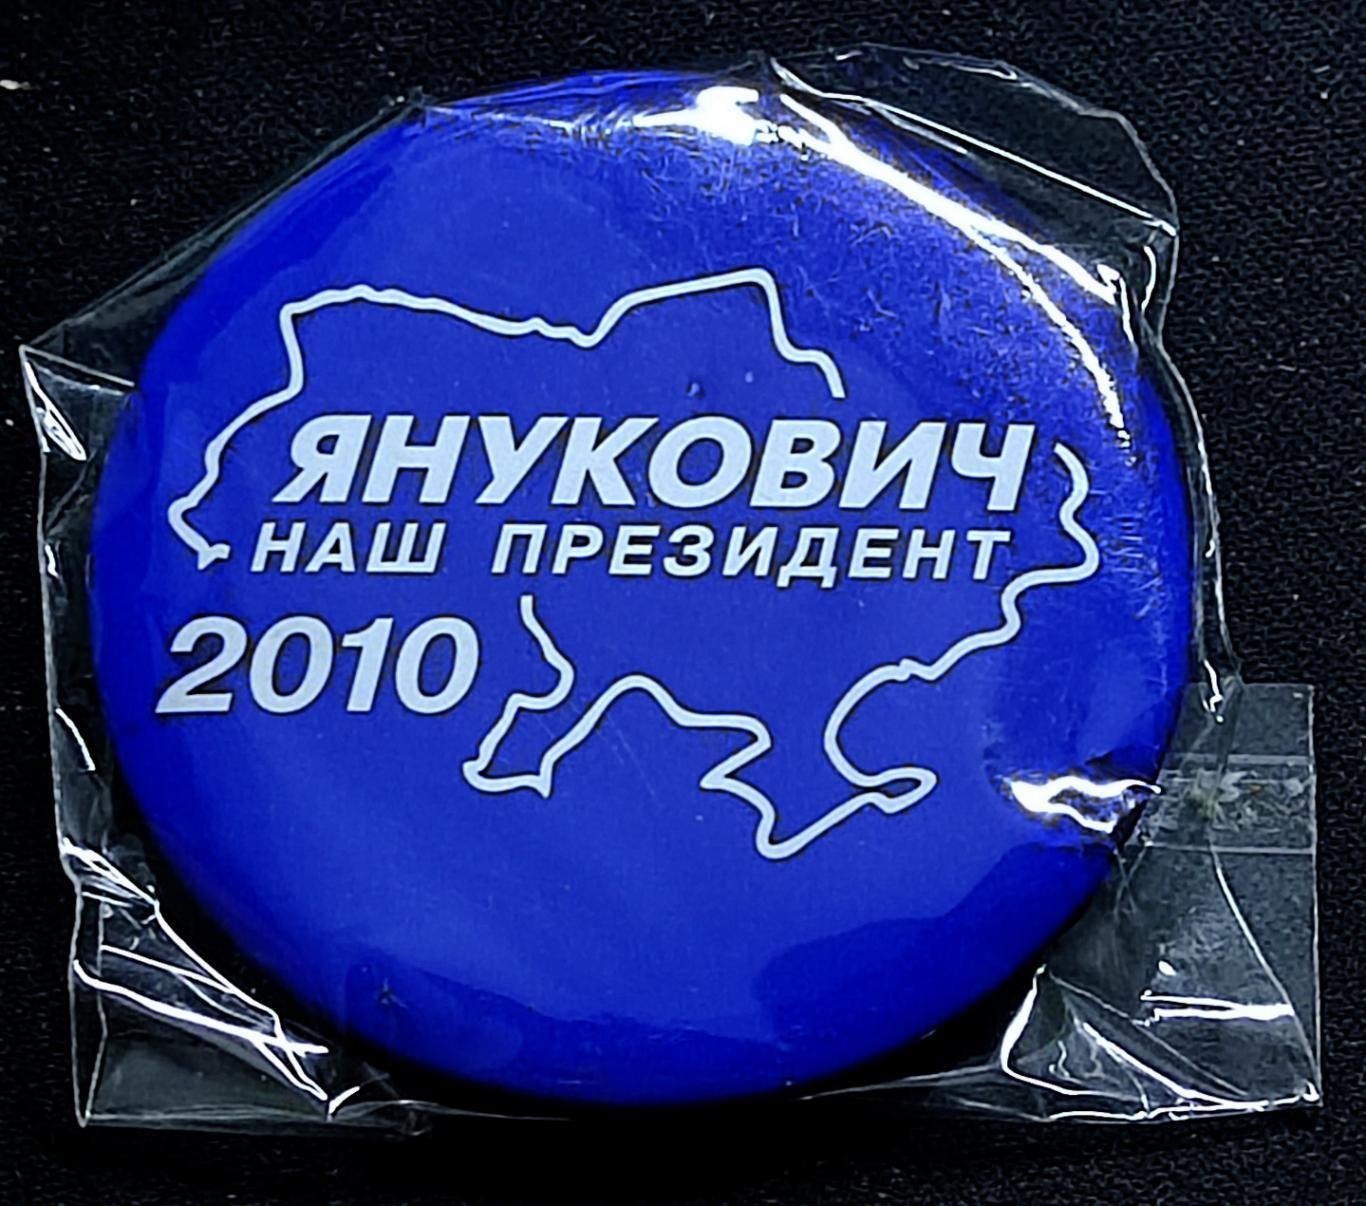 Выборы президента Украины 2010 - Янукович президент. Агитация